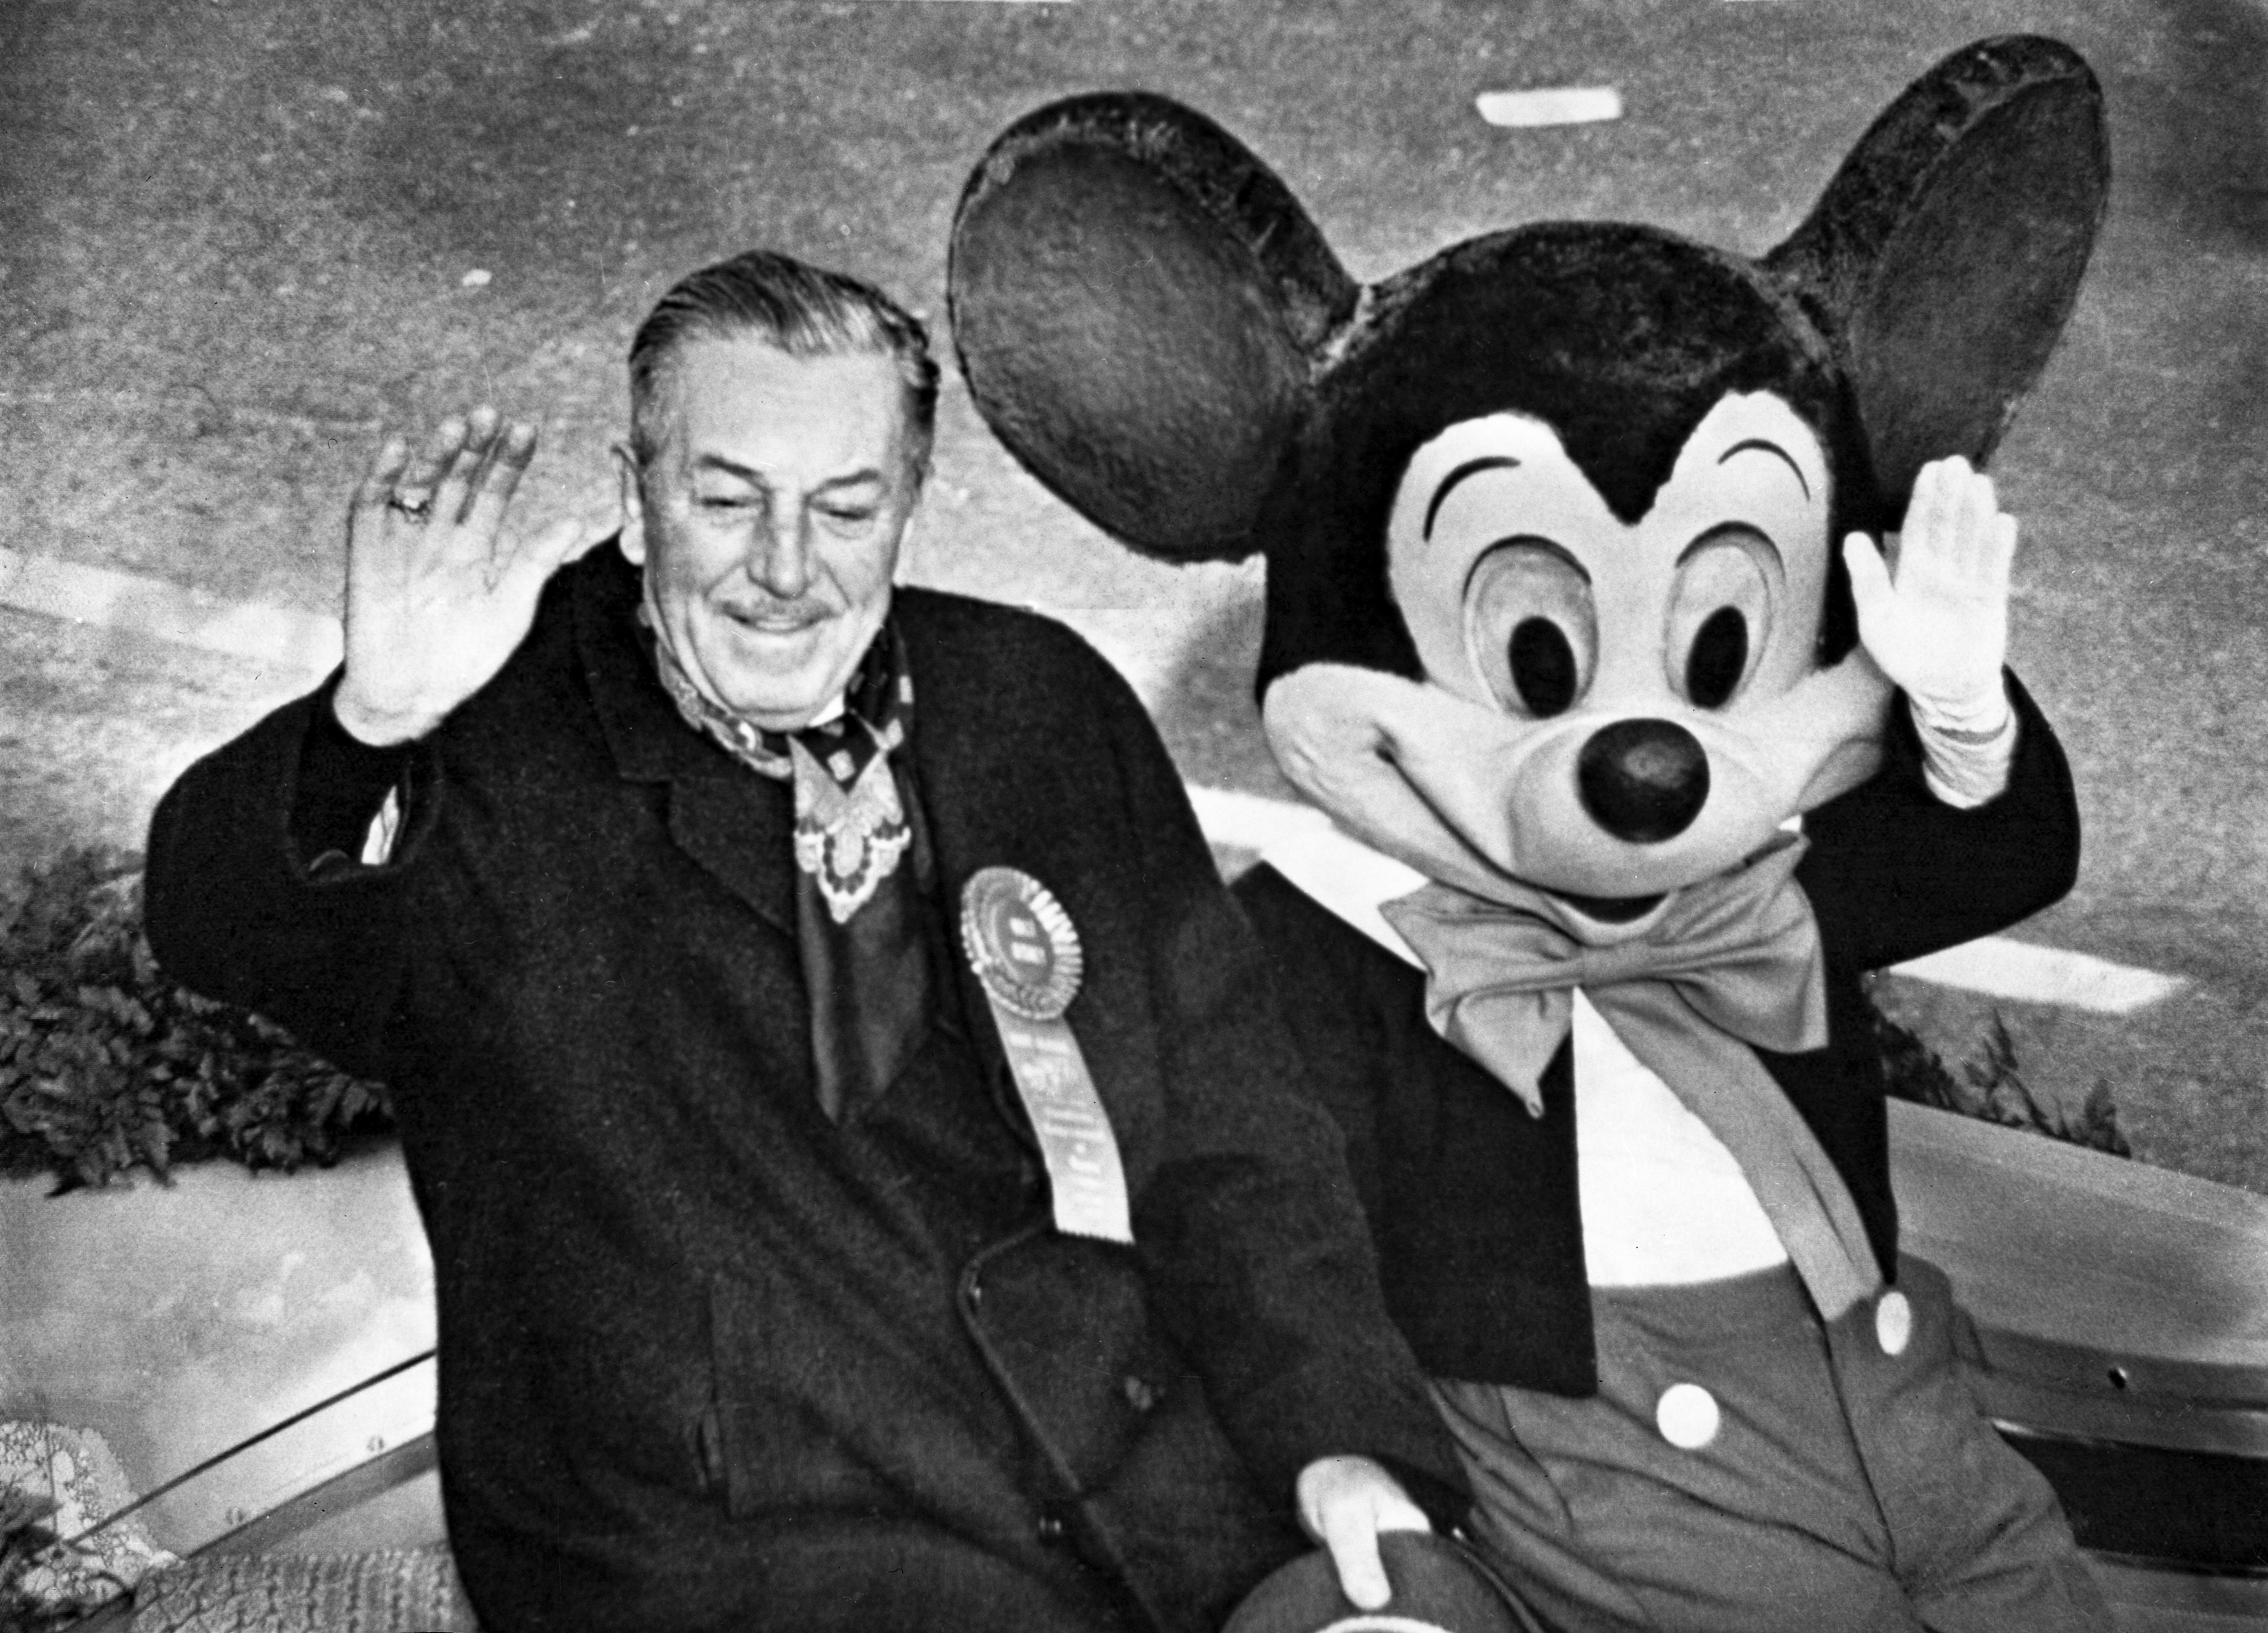 Fue congelado Walt Disney? Rumores, leyendas y certezas sobre él y otros  150 humanos “criogenizados” - Infobae